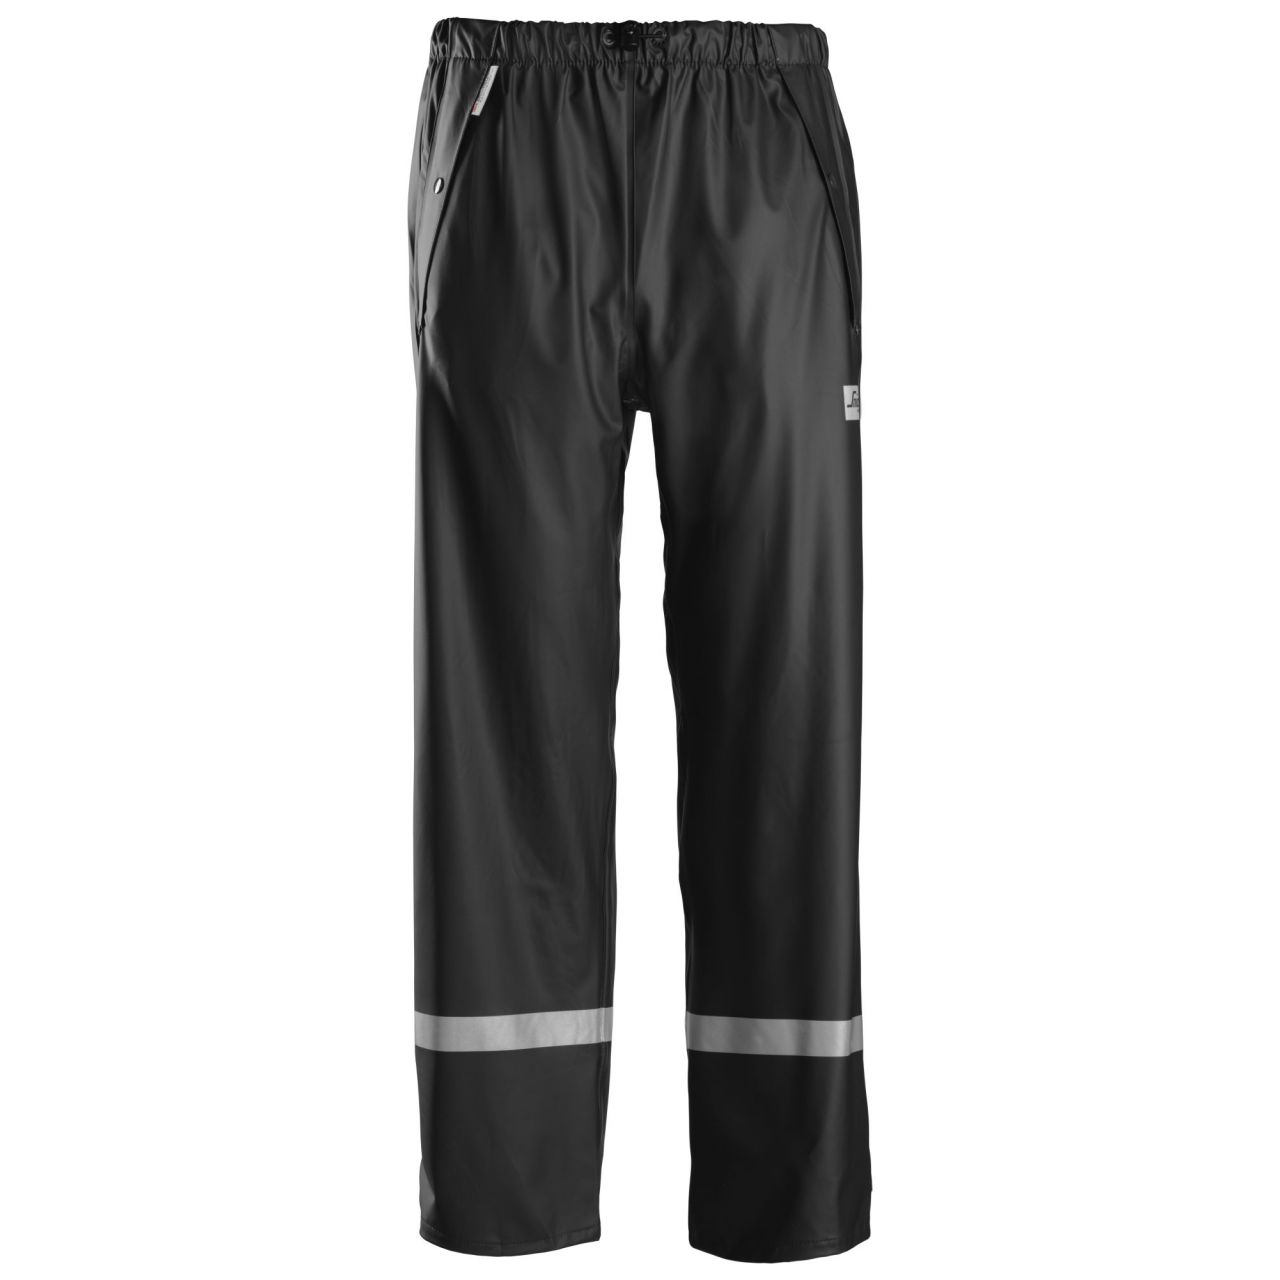 8201 Pantalón Impermeable PU negro talla XL